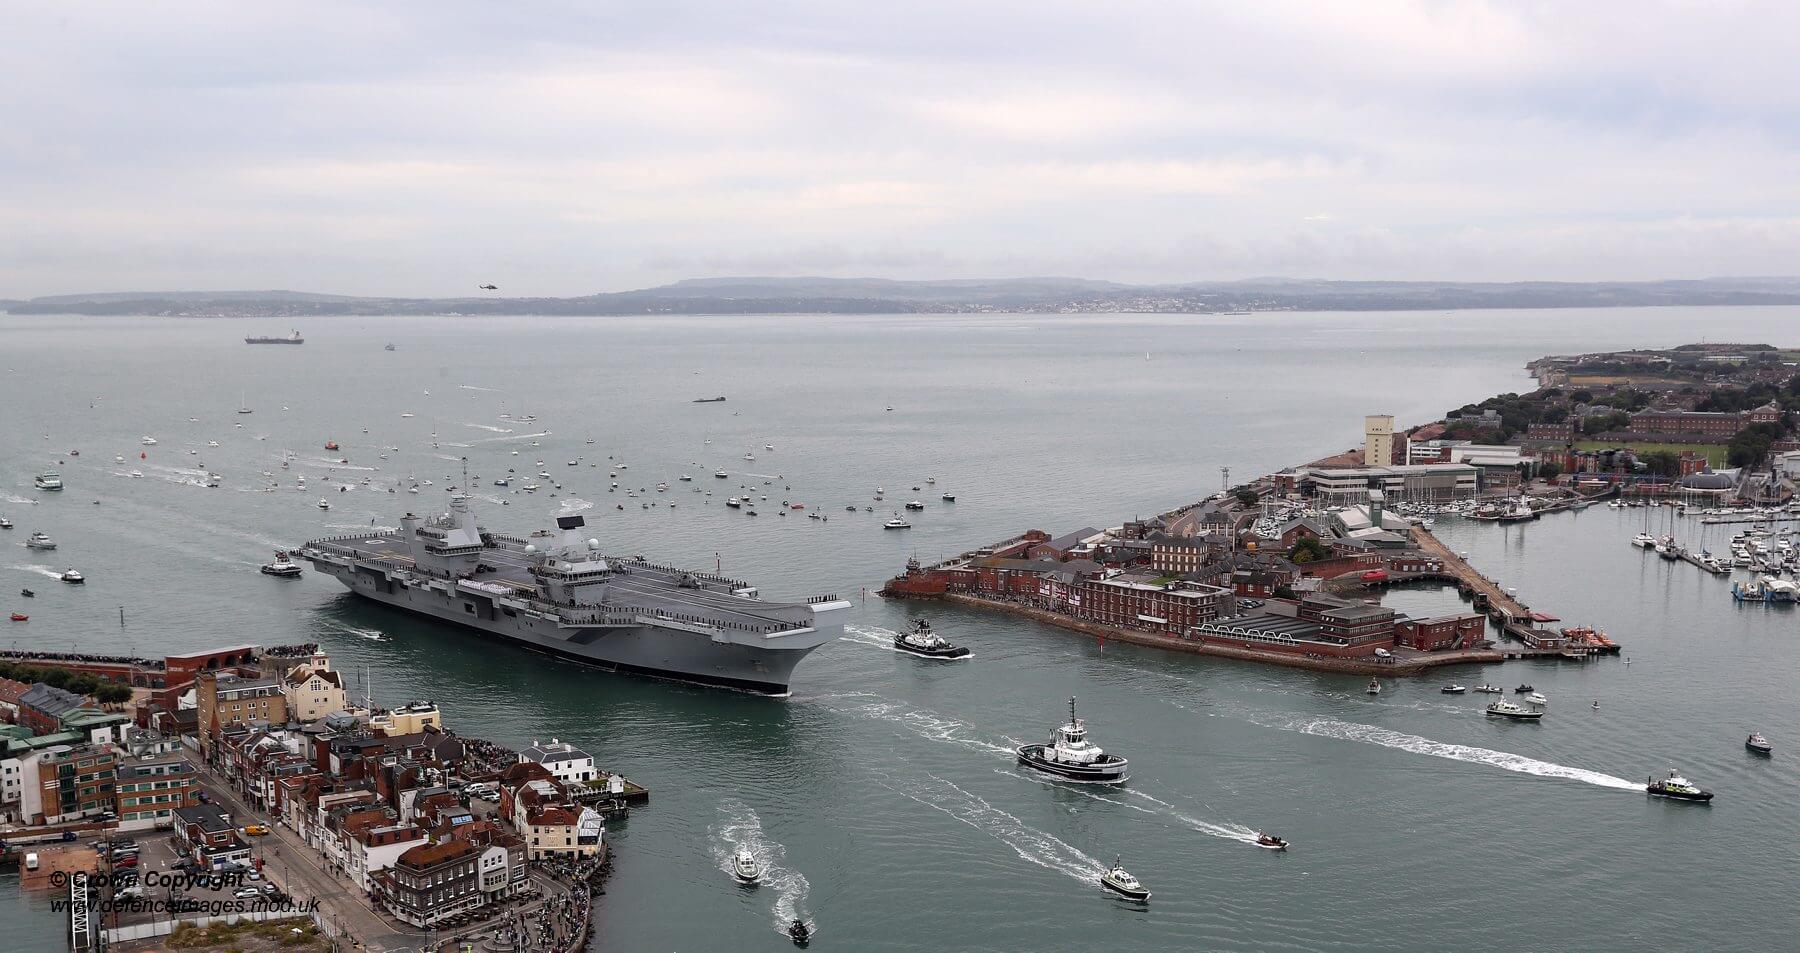 Anten - Het Britse vliegkampschip Queen Elizabeth in Portsmouth in 2017. Defence Images - Flickr